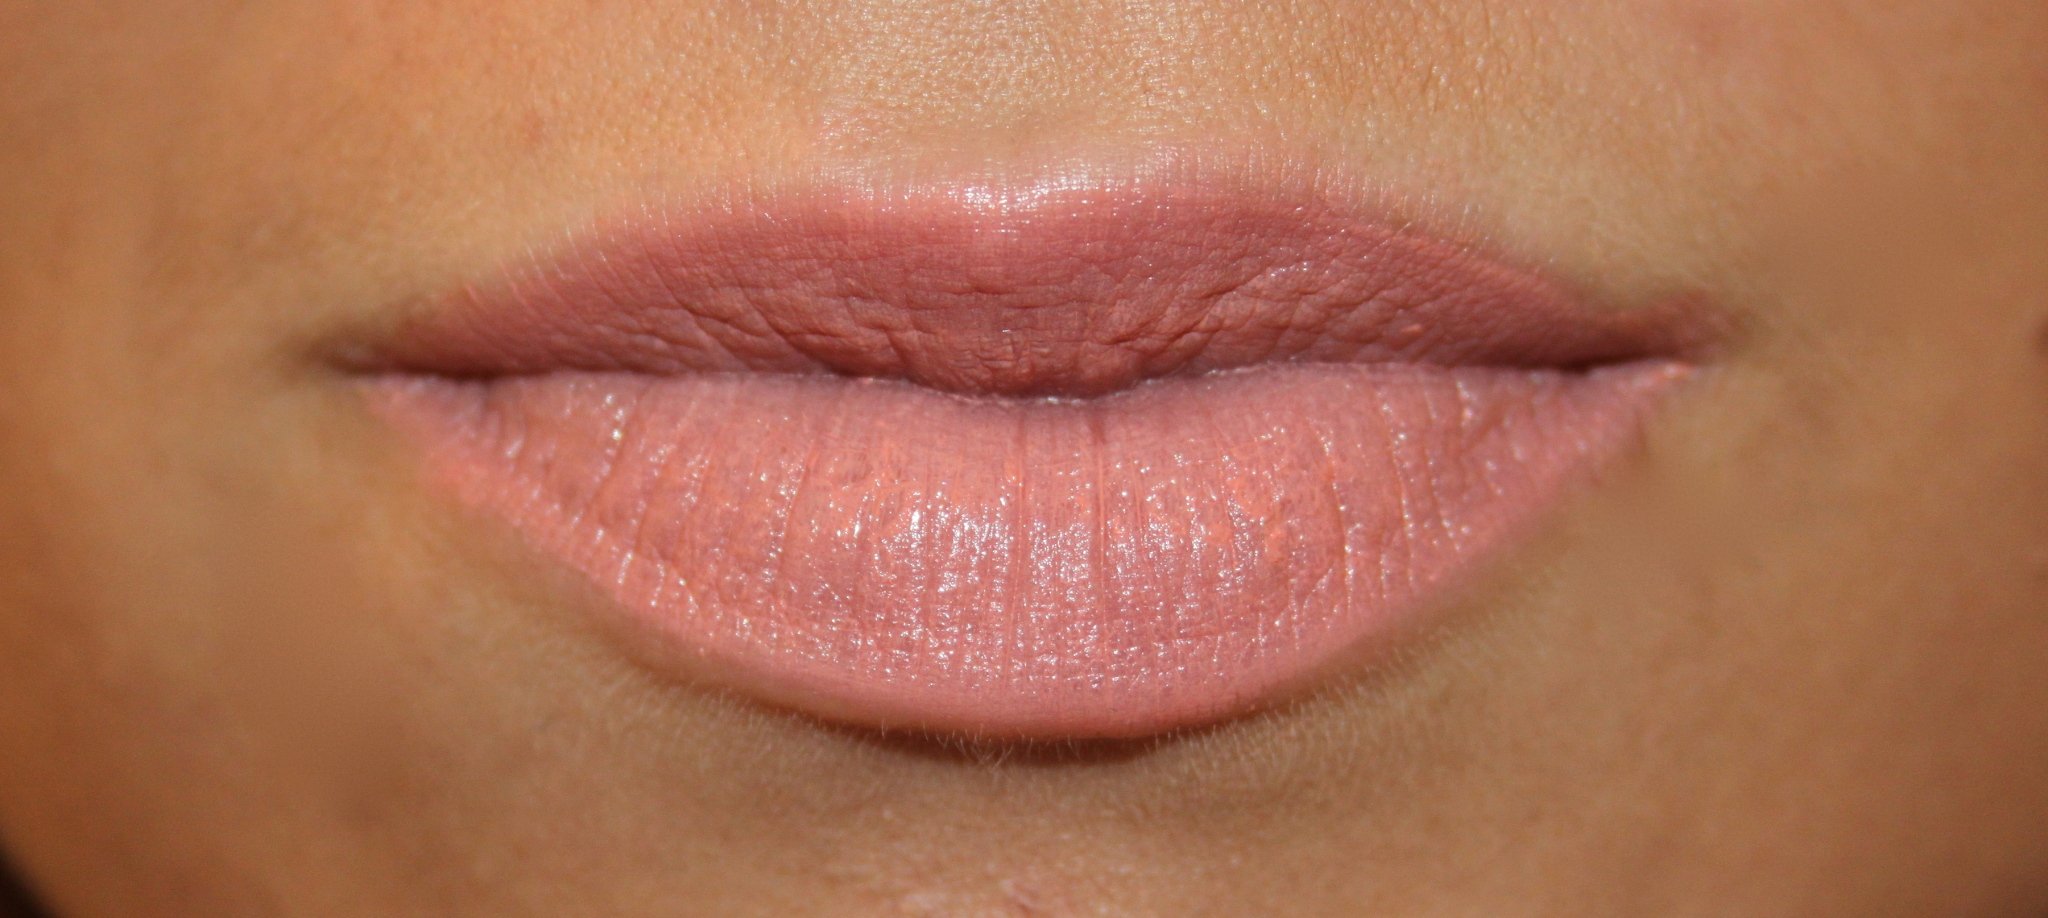 Форма половых губ персик щавель фото. Персиковый перманент губ. Татуаж губ персиковый цвет. Татуаж губ. Татуаж губ персик.